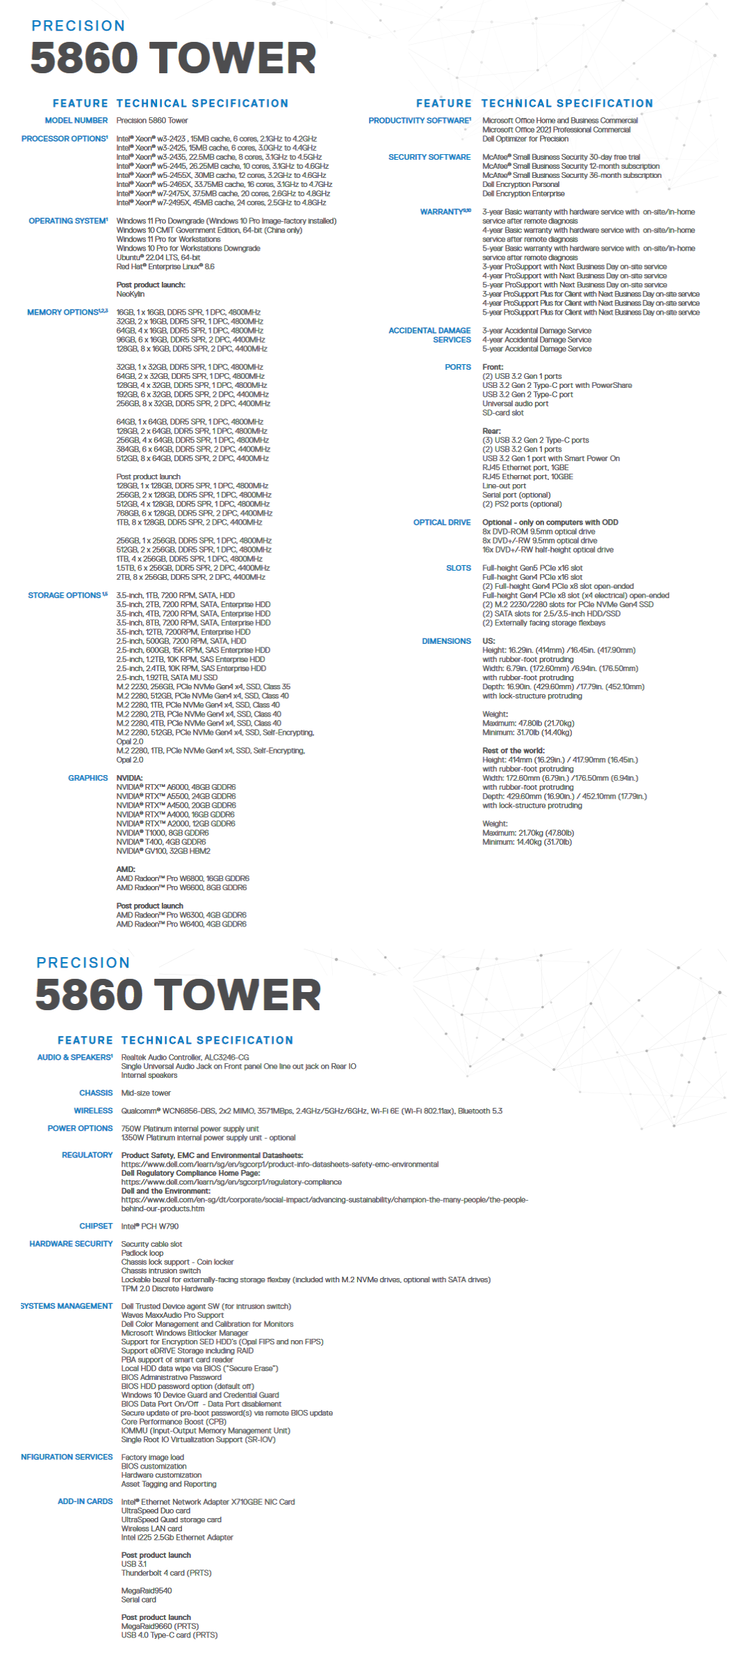 Caractéristiques techniques de la tour Dell Precision 5860